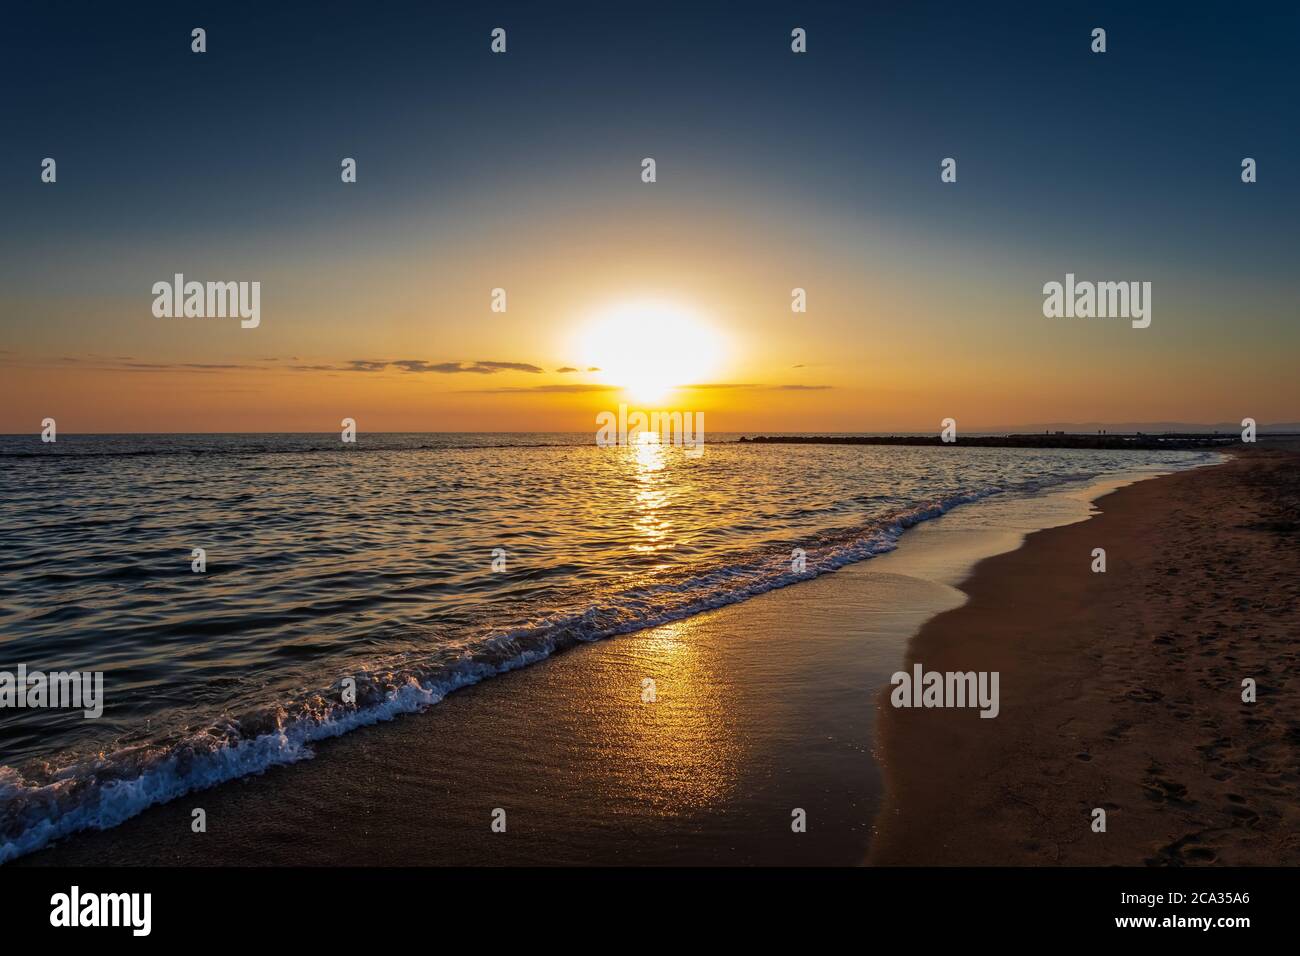 Una maravillosa puesta de sol en el horizonte en la playa. El final del día en el mar. Colores brillantes e intensos de la naturaleza. Foto de stock